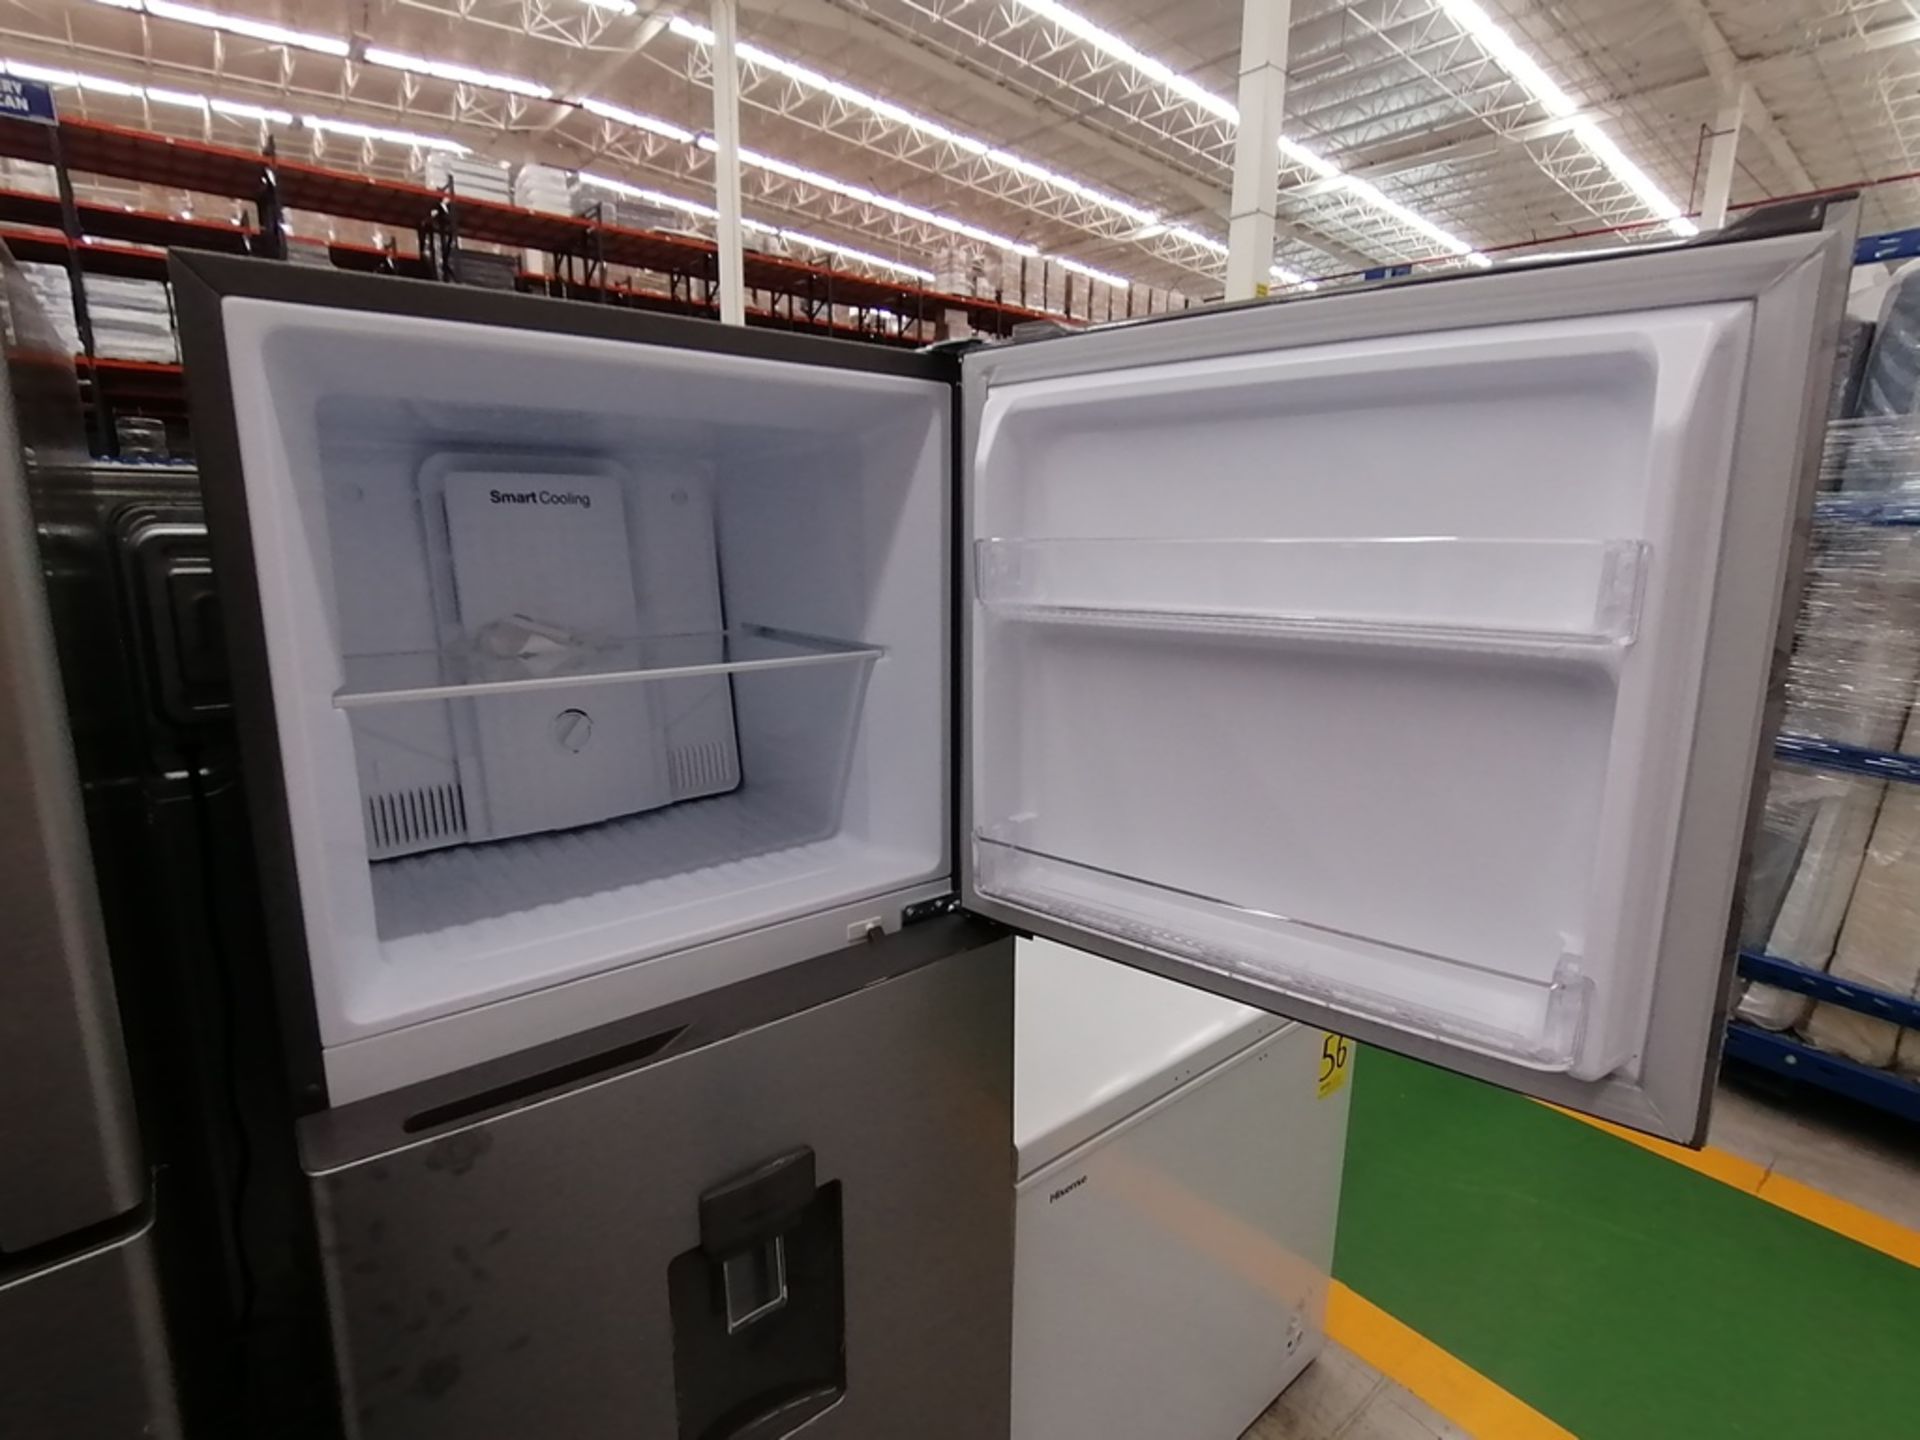 Lote de 2 refrigeradores incluye: 1 Refrigerador con dispensador de agua, Marca Winia, Modelo DFR40 - Image 12 of 17